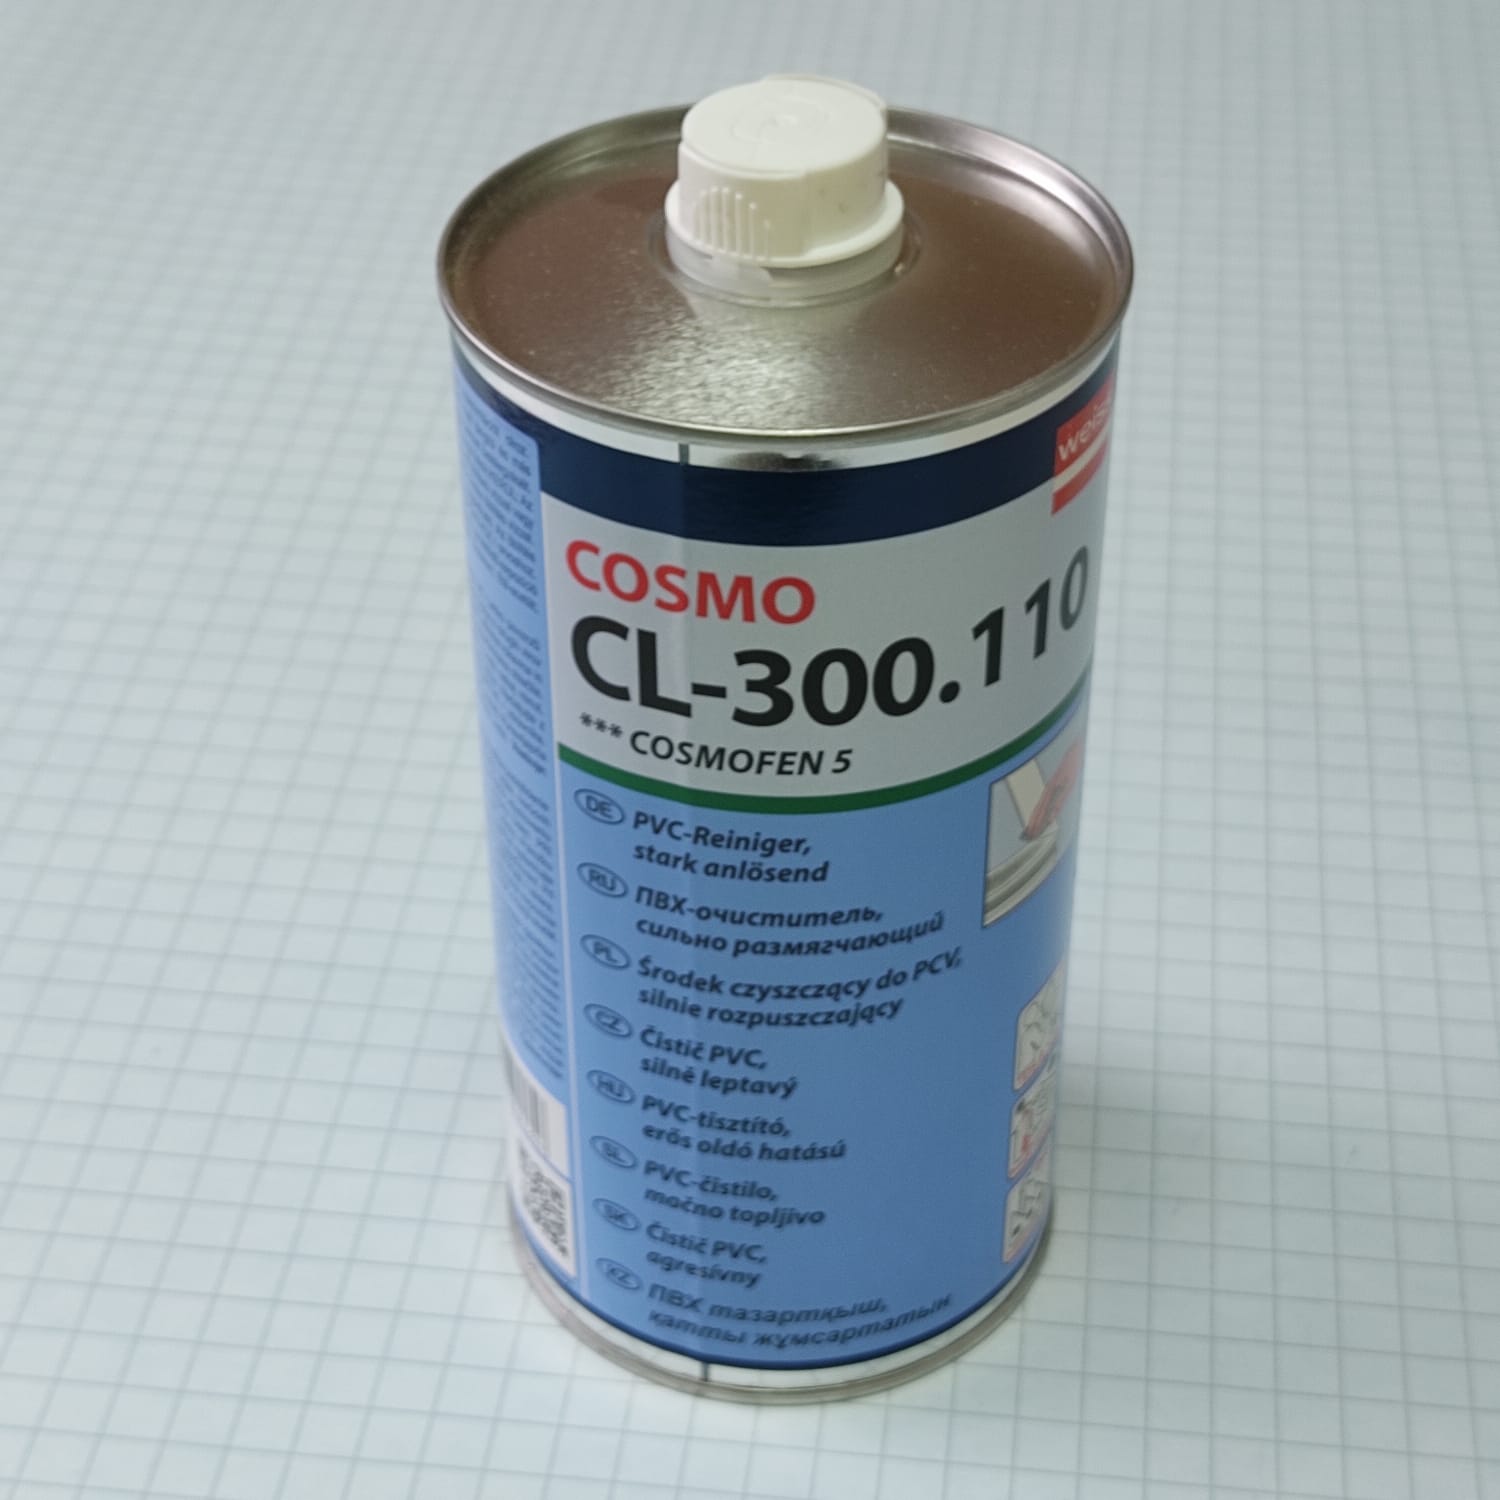 Космофен 5. Очиститель Cosmofen 5 1000 мл. Очиститель Cosmofen 60 (Cosmo CL 300.150). Очиститель космофен 1000мл. Растворитель космофен 5.